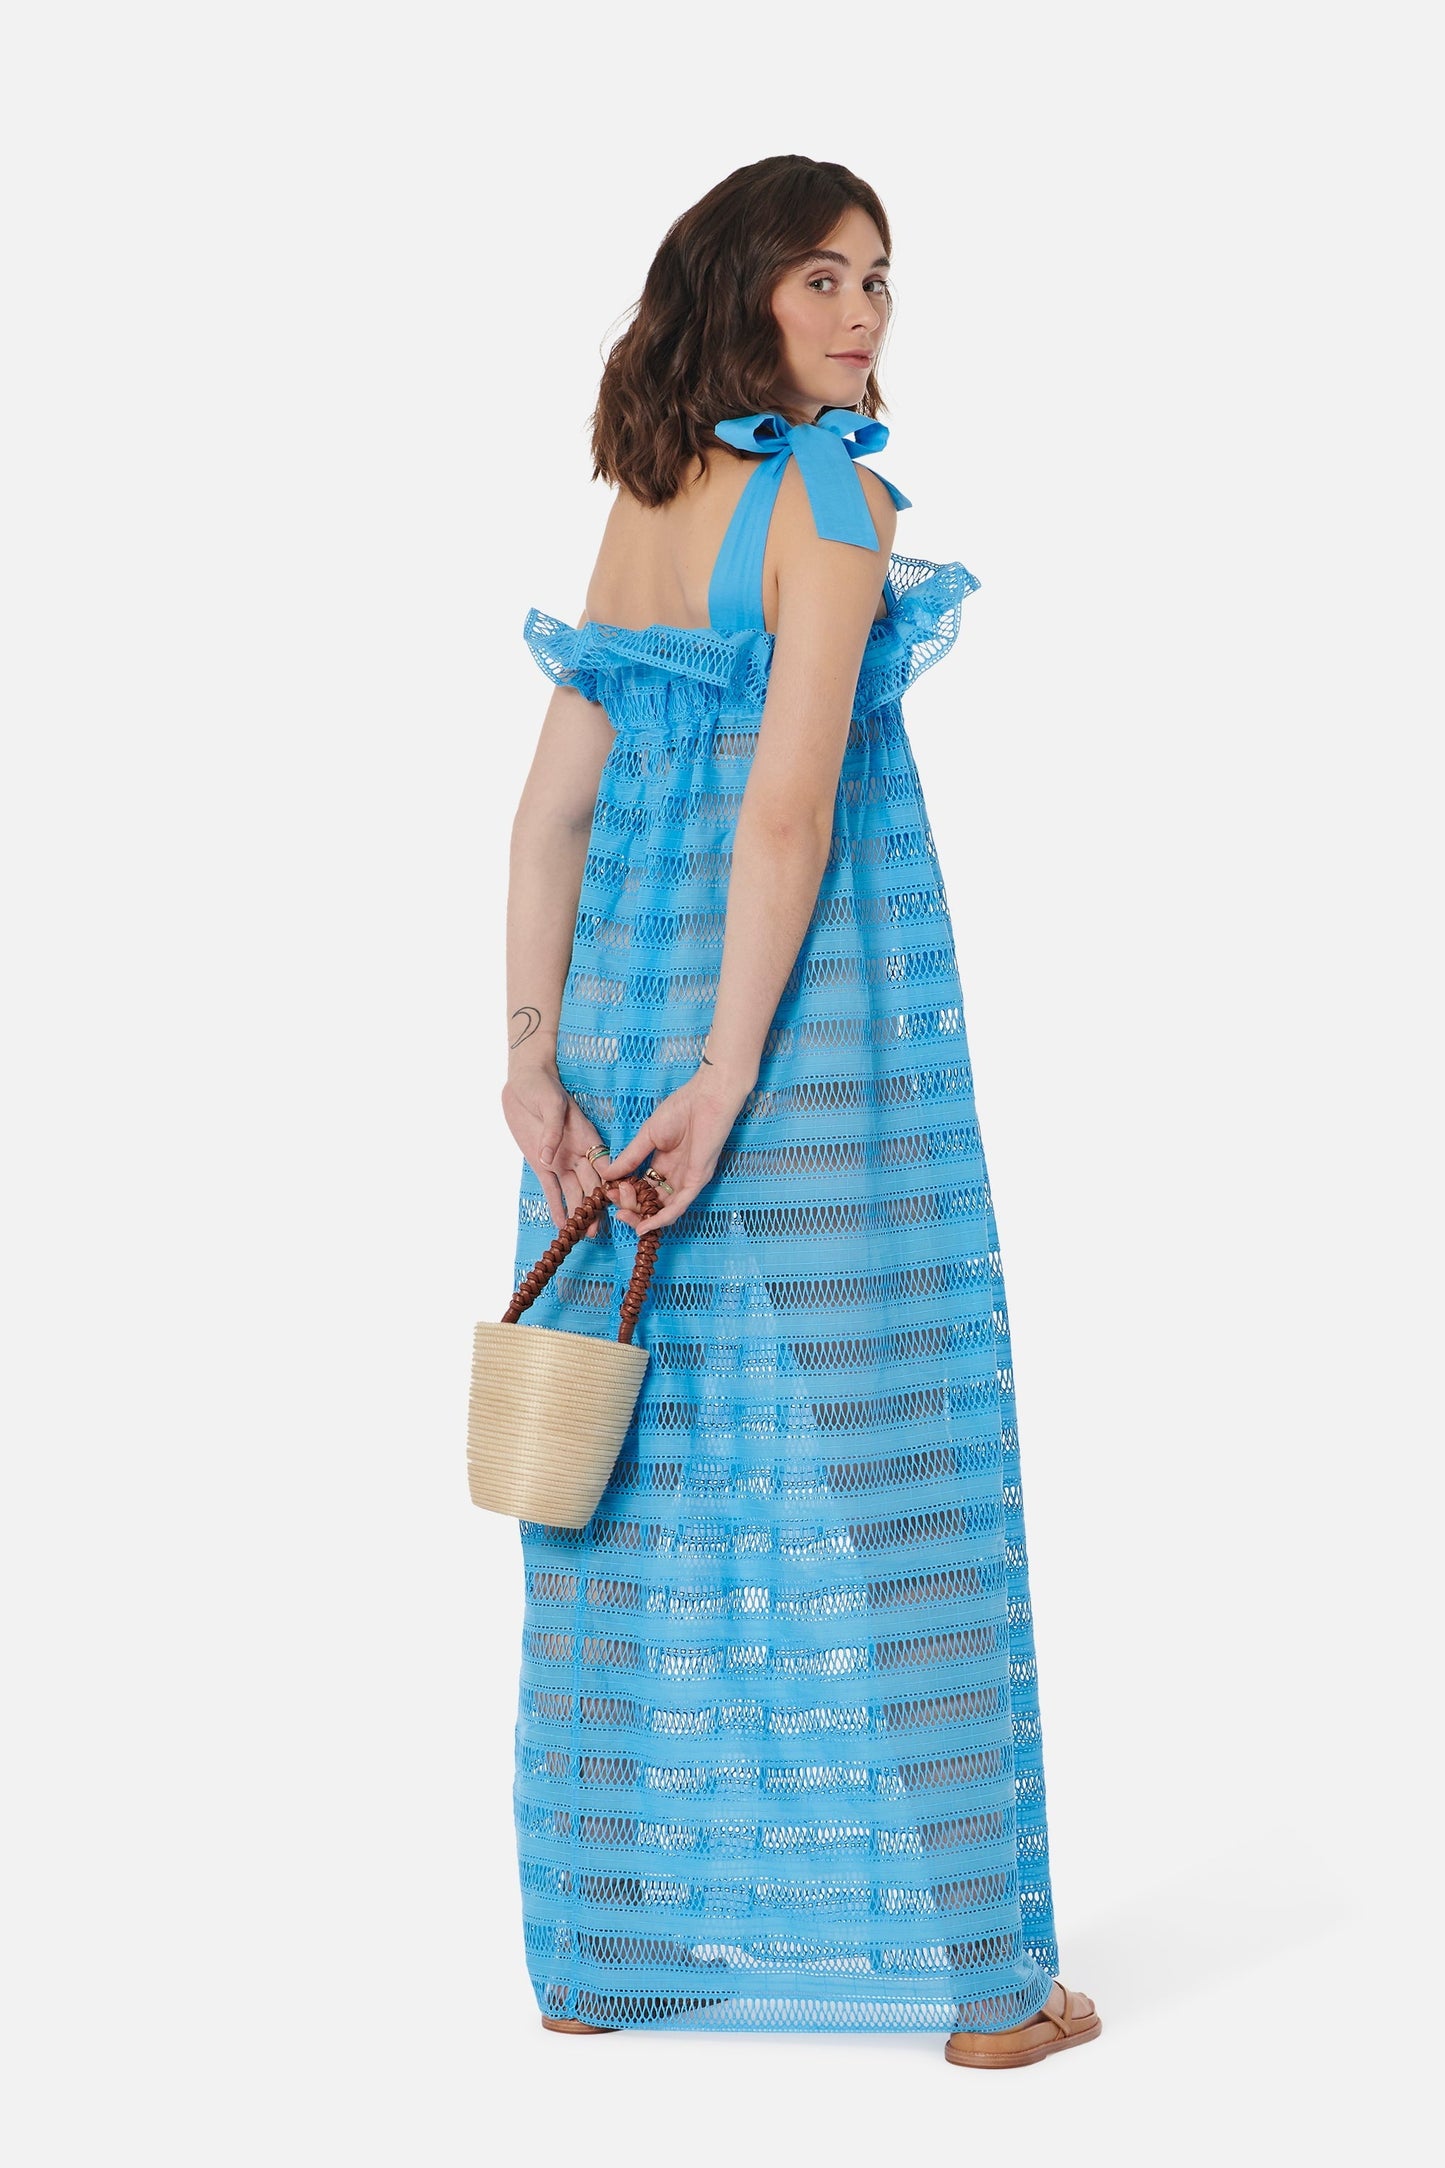 Women's Jaime Dress in True Blue Lattice Lace